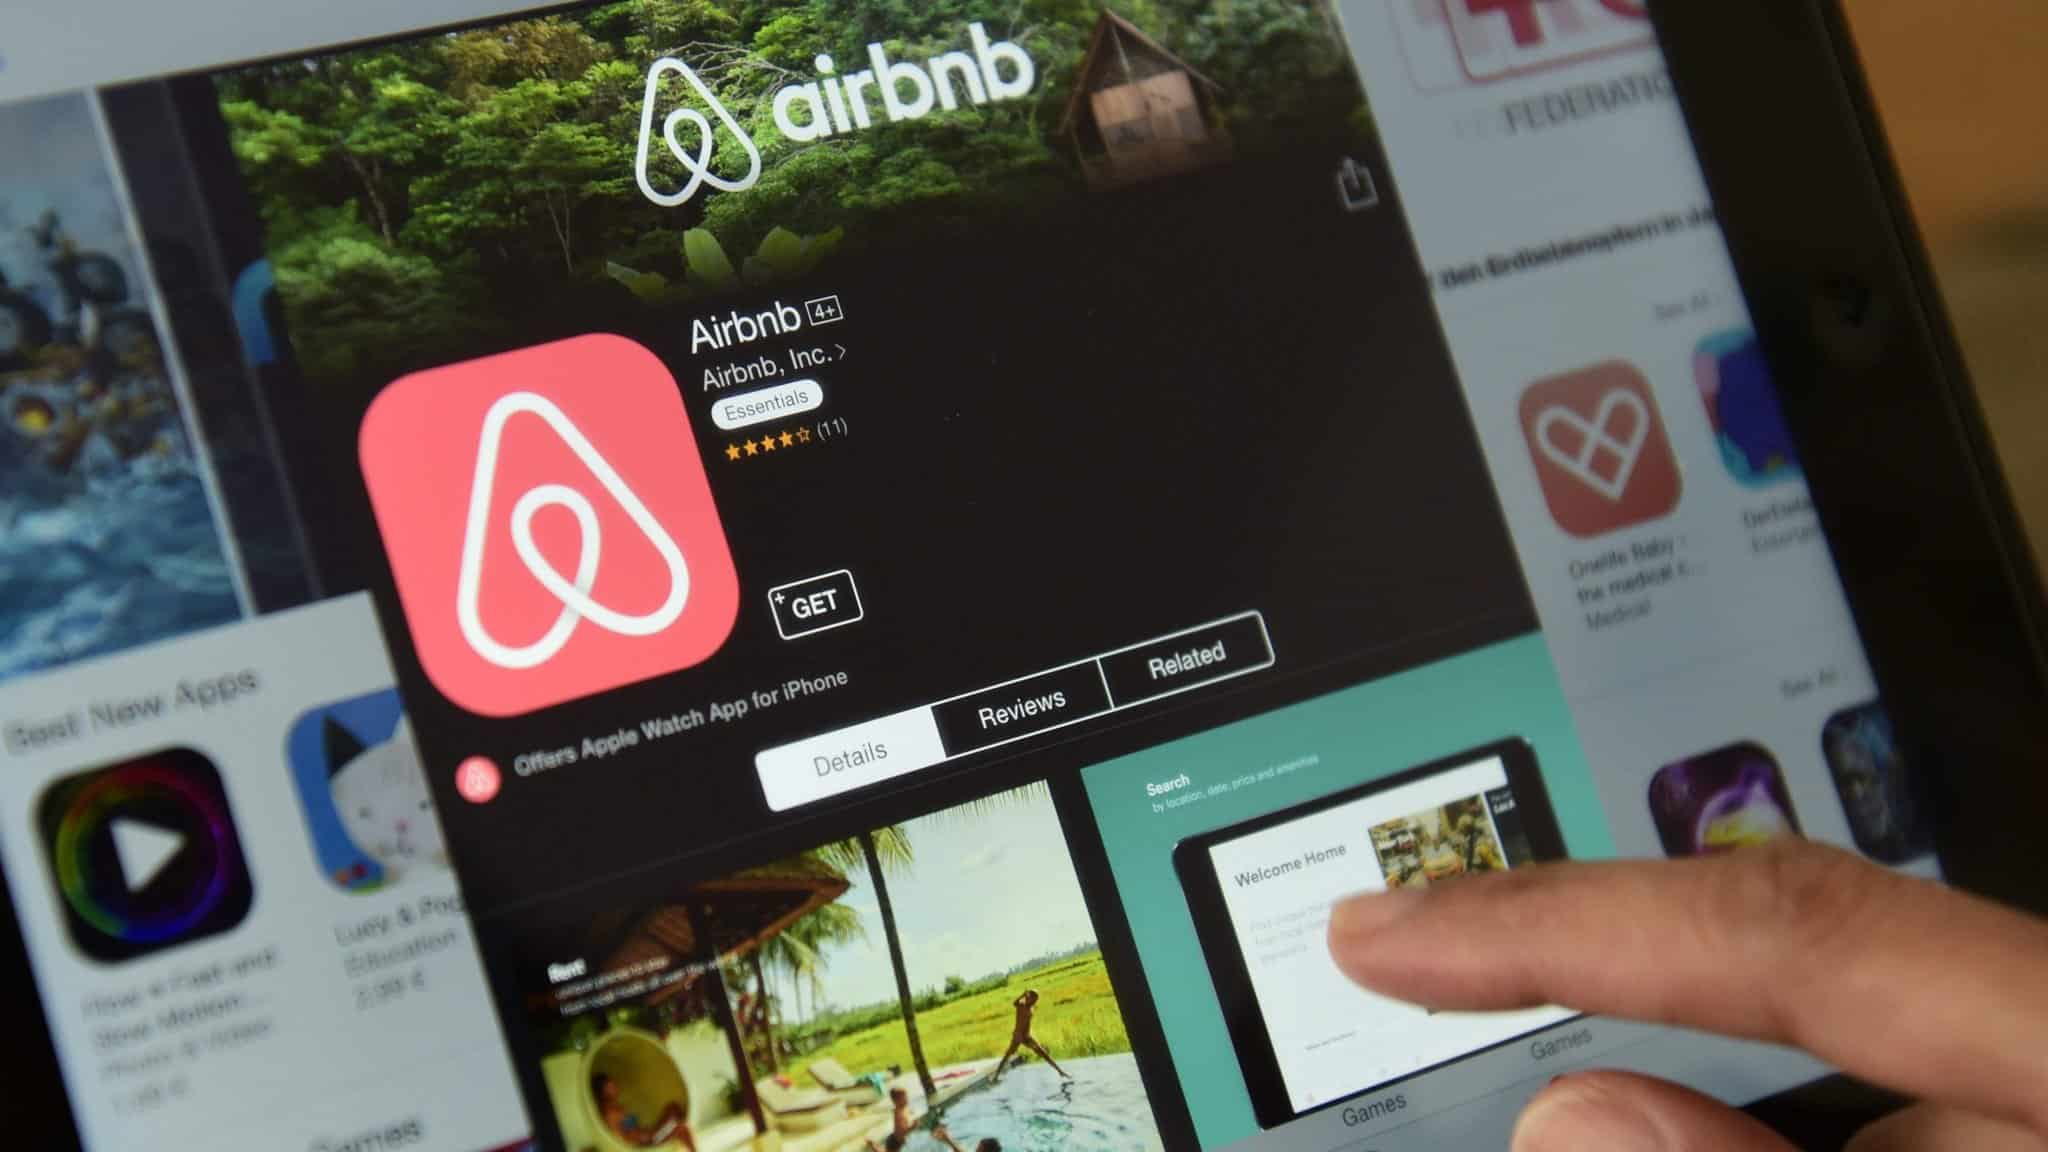 وب سایت airbnb